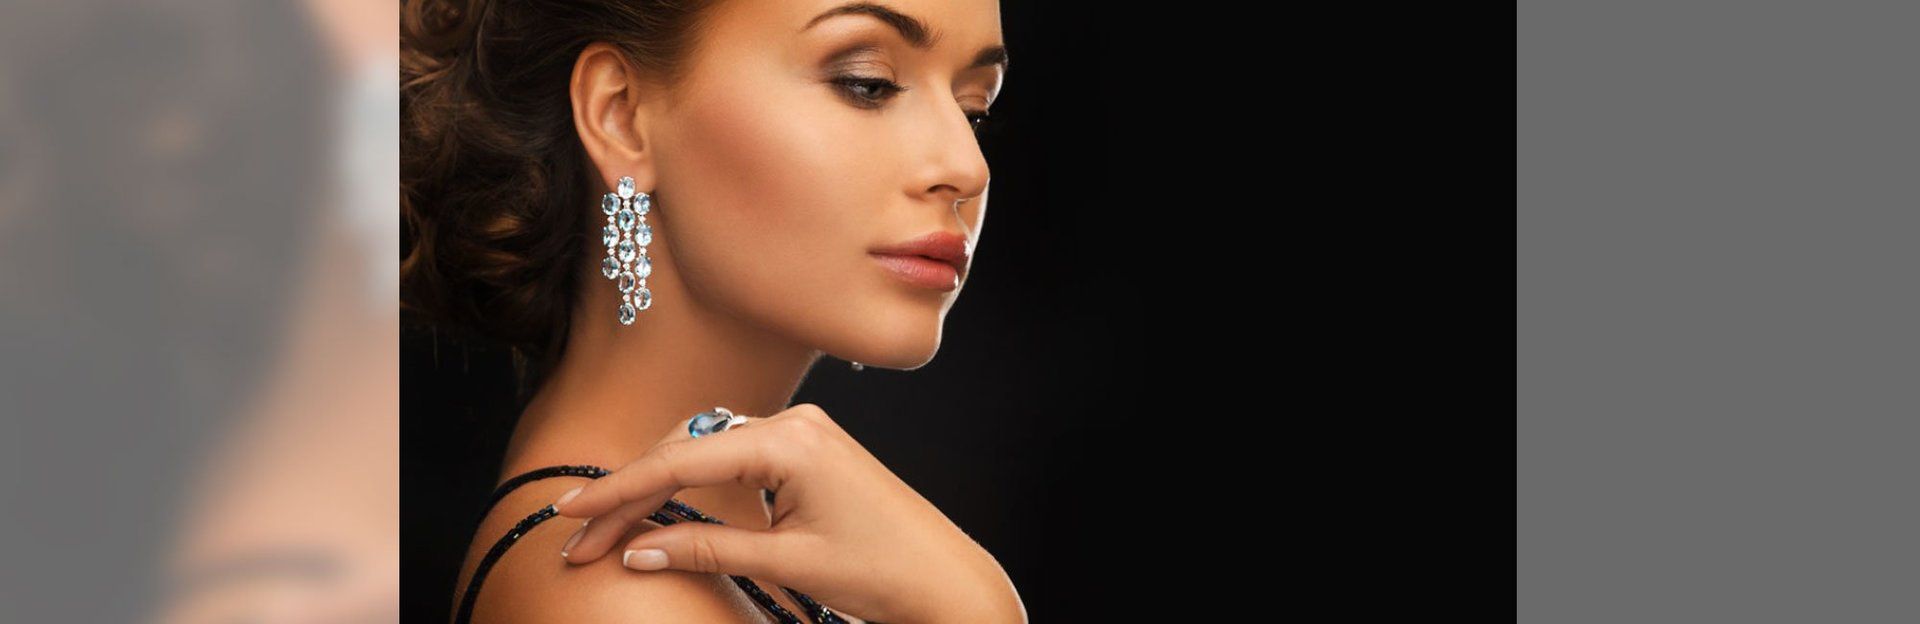 Lady wearing diamond earring